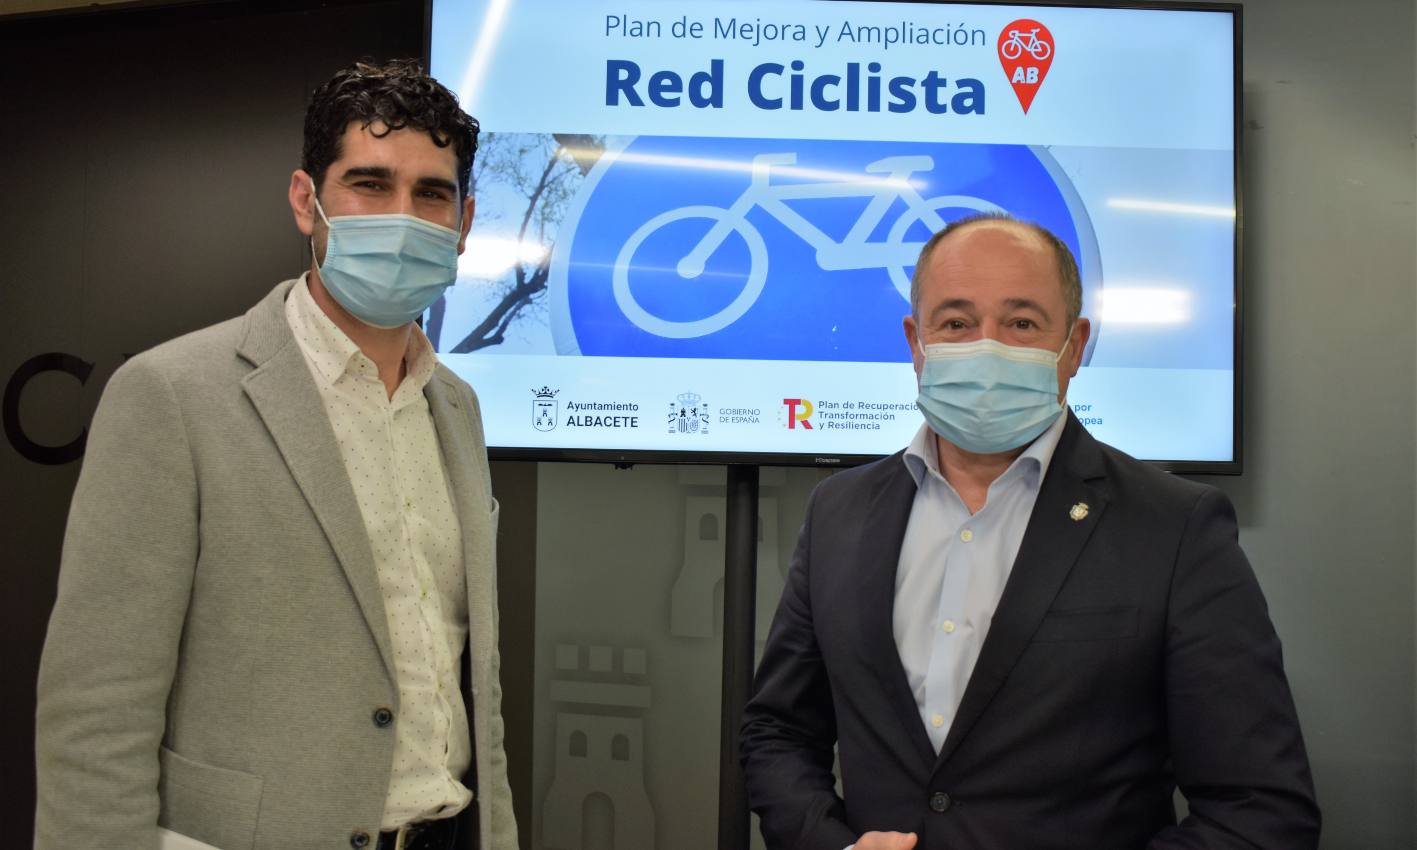 El Ayuntamiento de Albacete invierte 700.000€ en mejorar y ampliar la red ciclista.